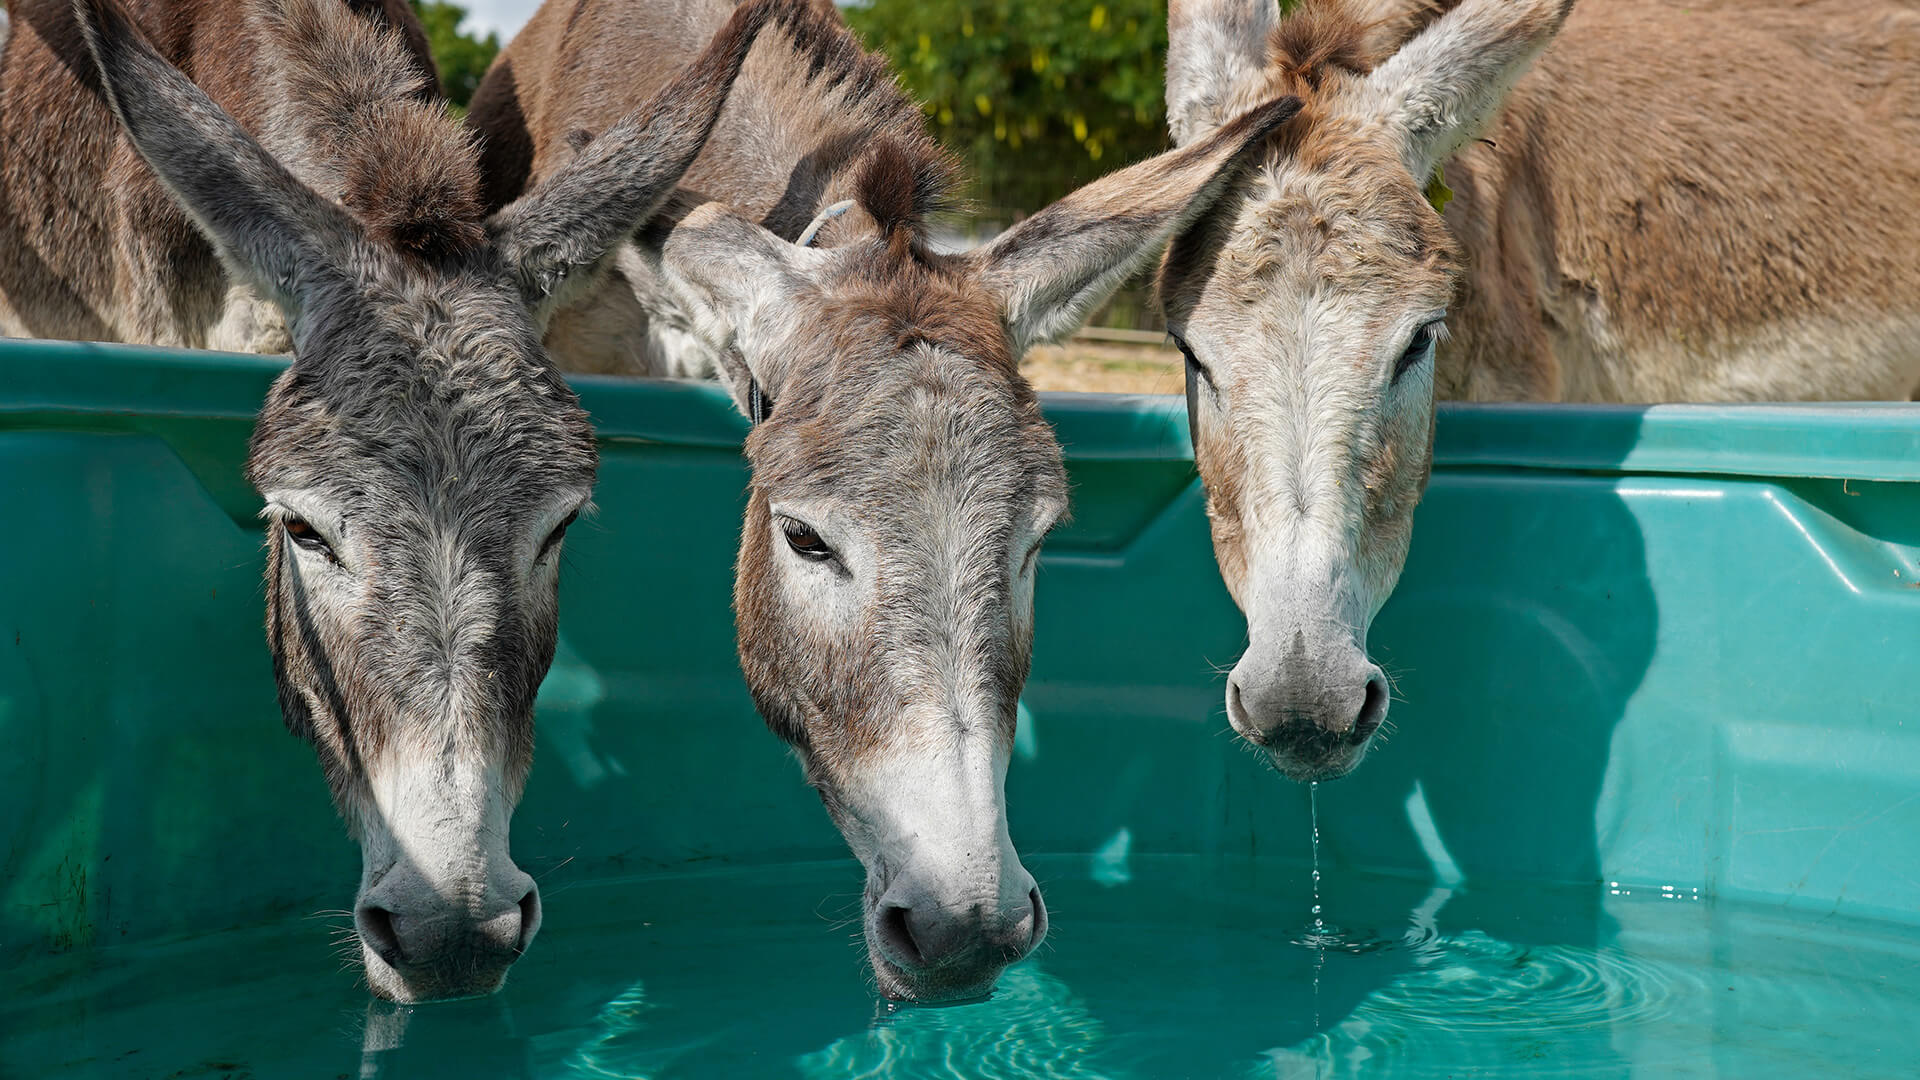 Donkeys drinking water